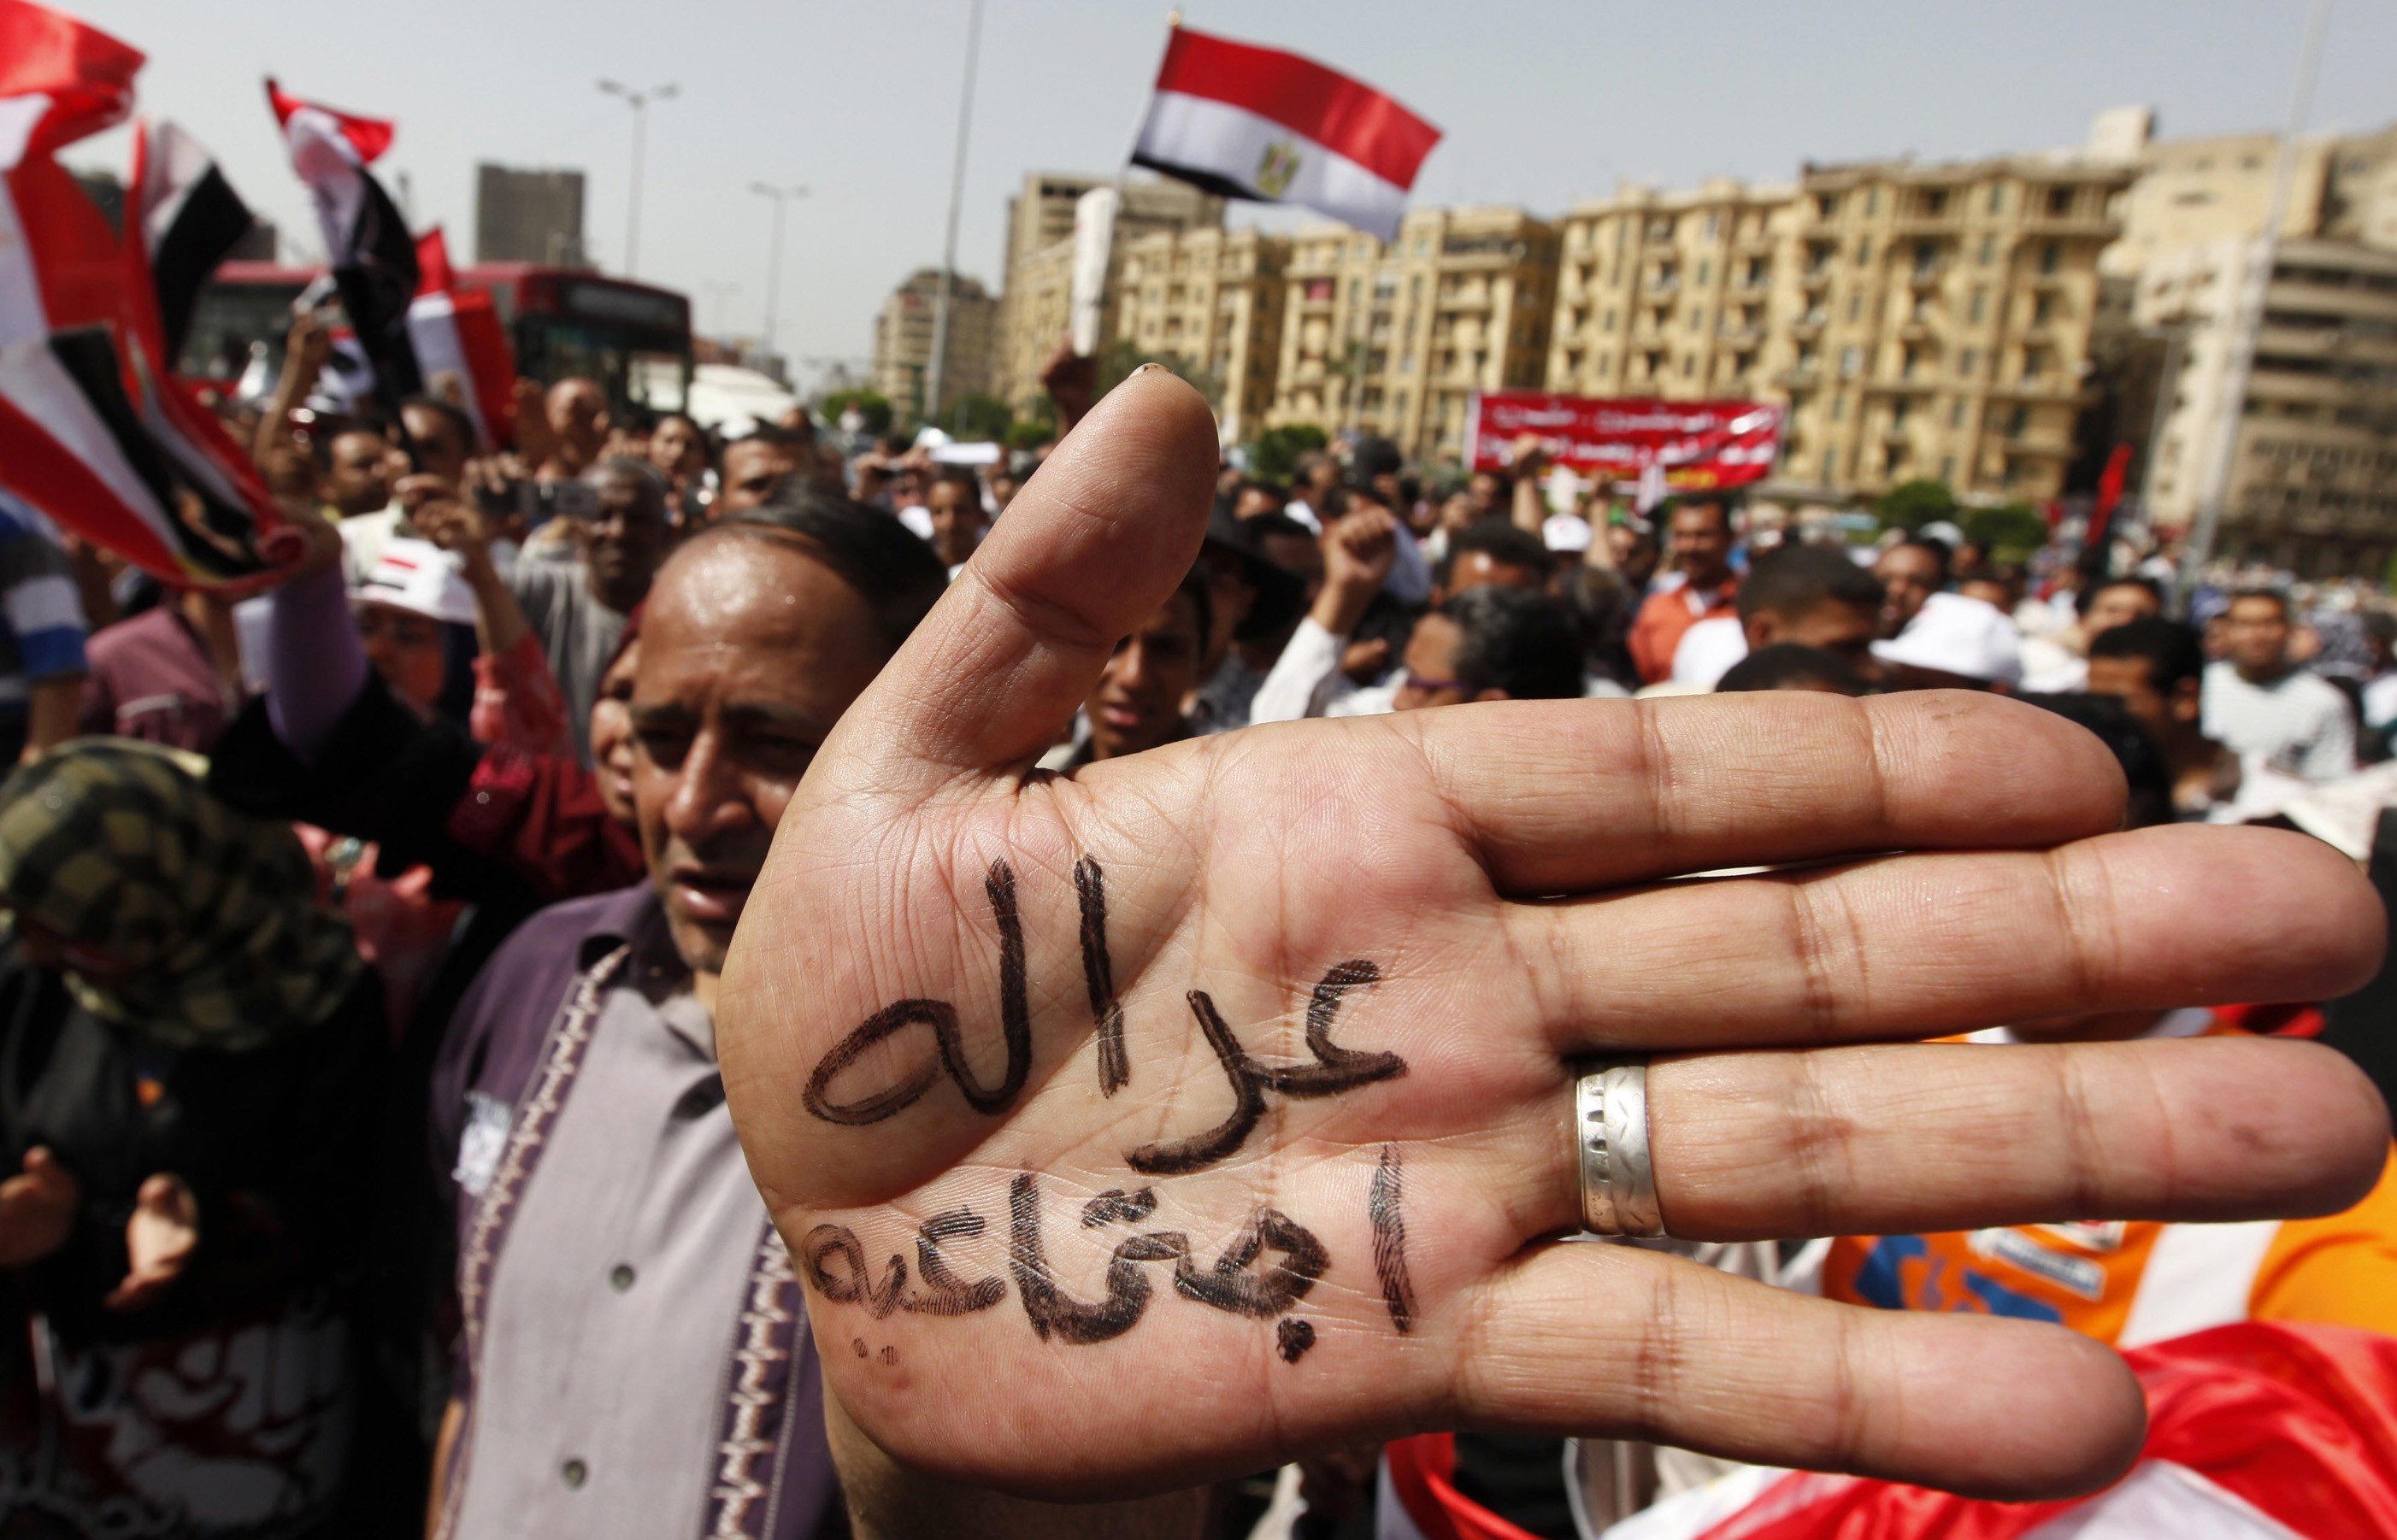 Κοινωνική δικαιοσύνη γραφει στο χέρι του ένας διαδηλωτής. ΦΩΤΟ REUTERS